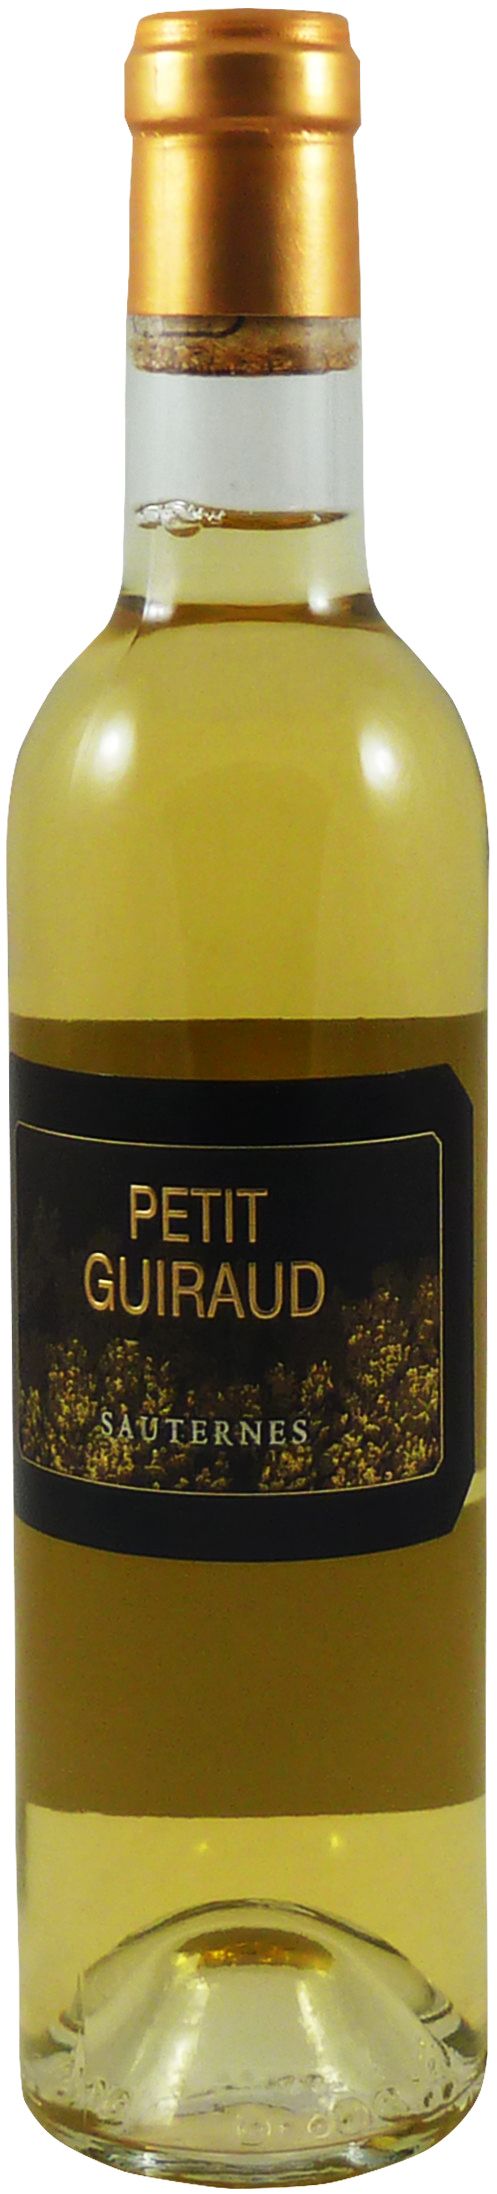 Petit Guiraud, 2012